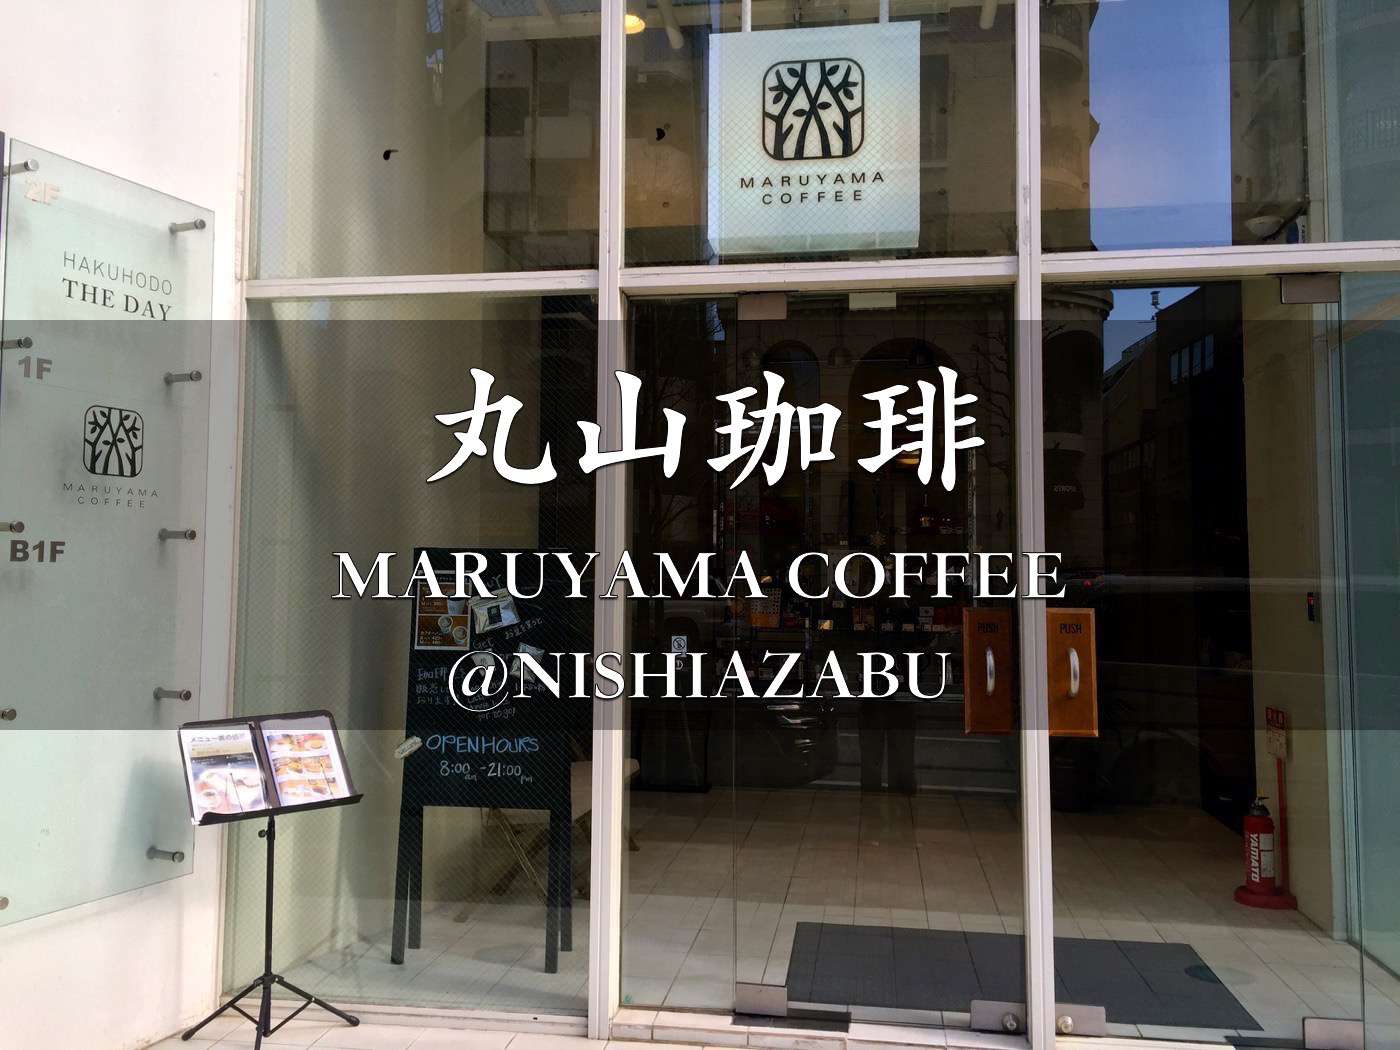 MaruyamaCoffee nishiazabu